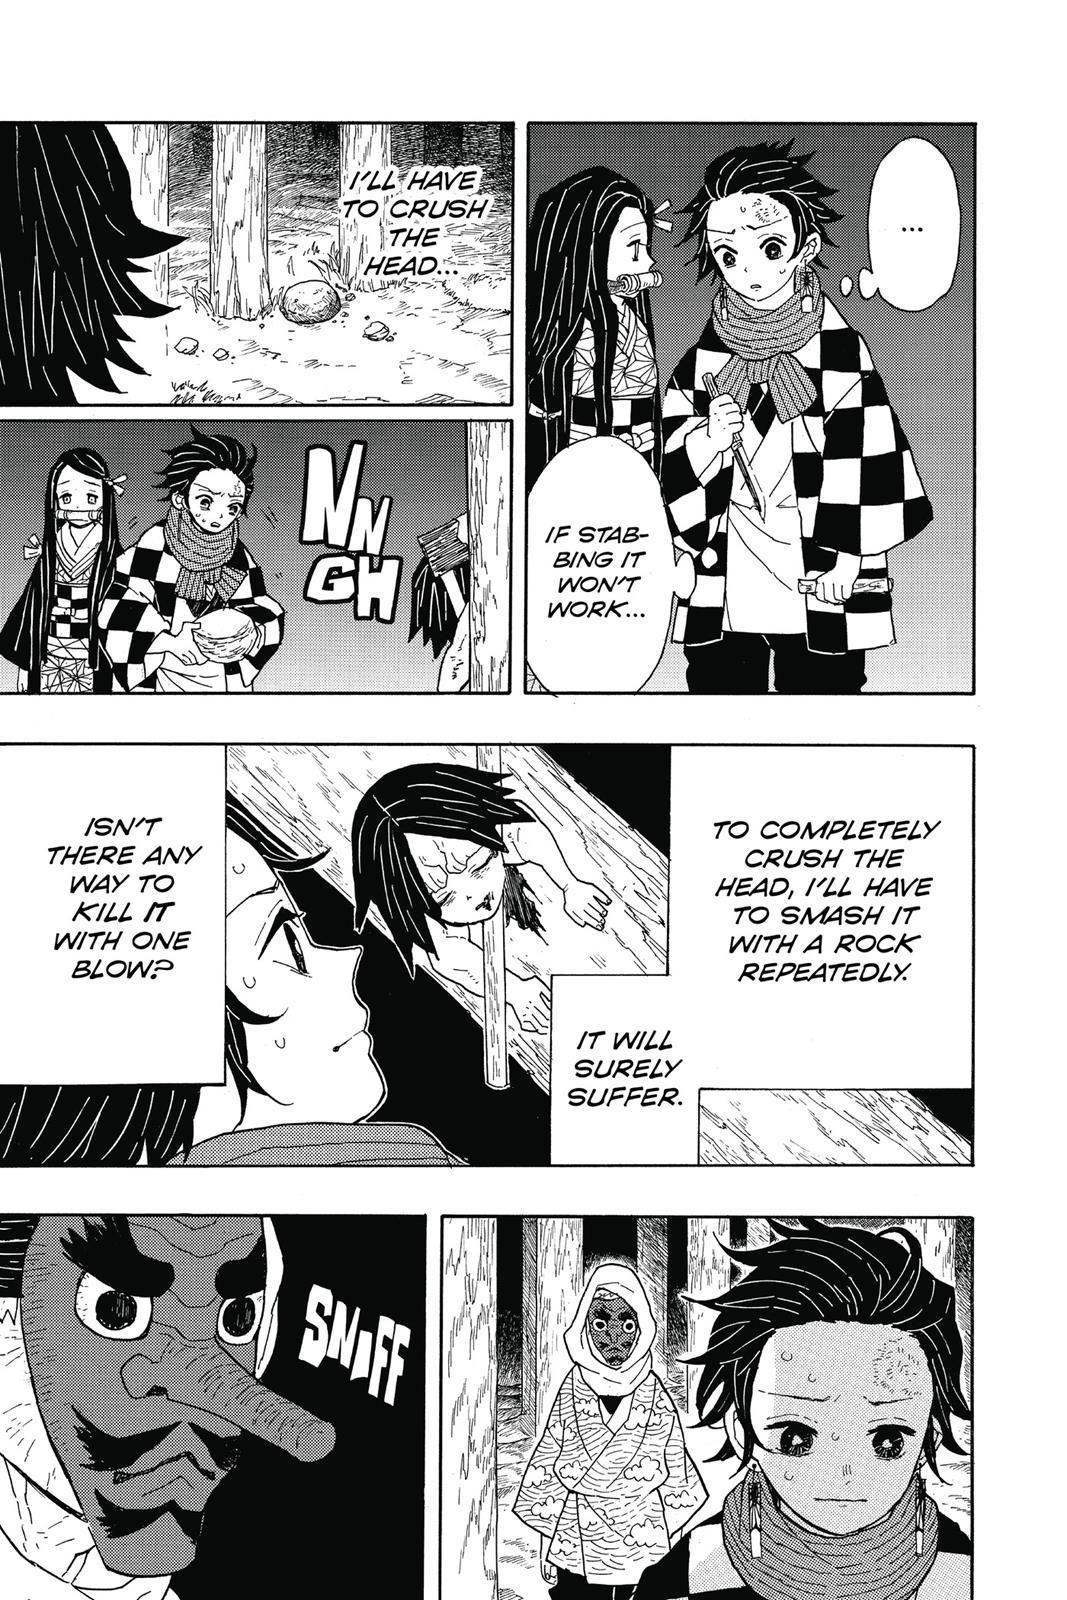 Demon Slayer Manga Manga Chapter - 3 - image 5